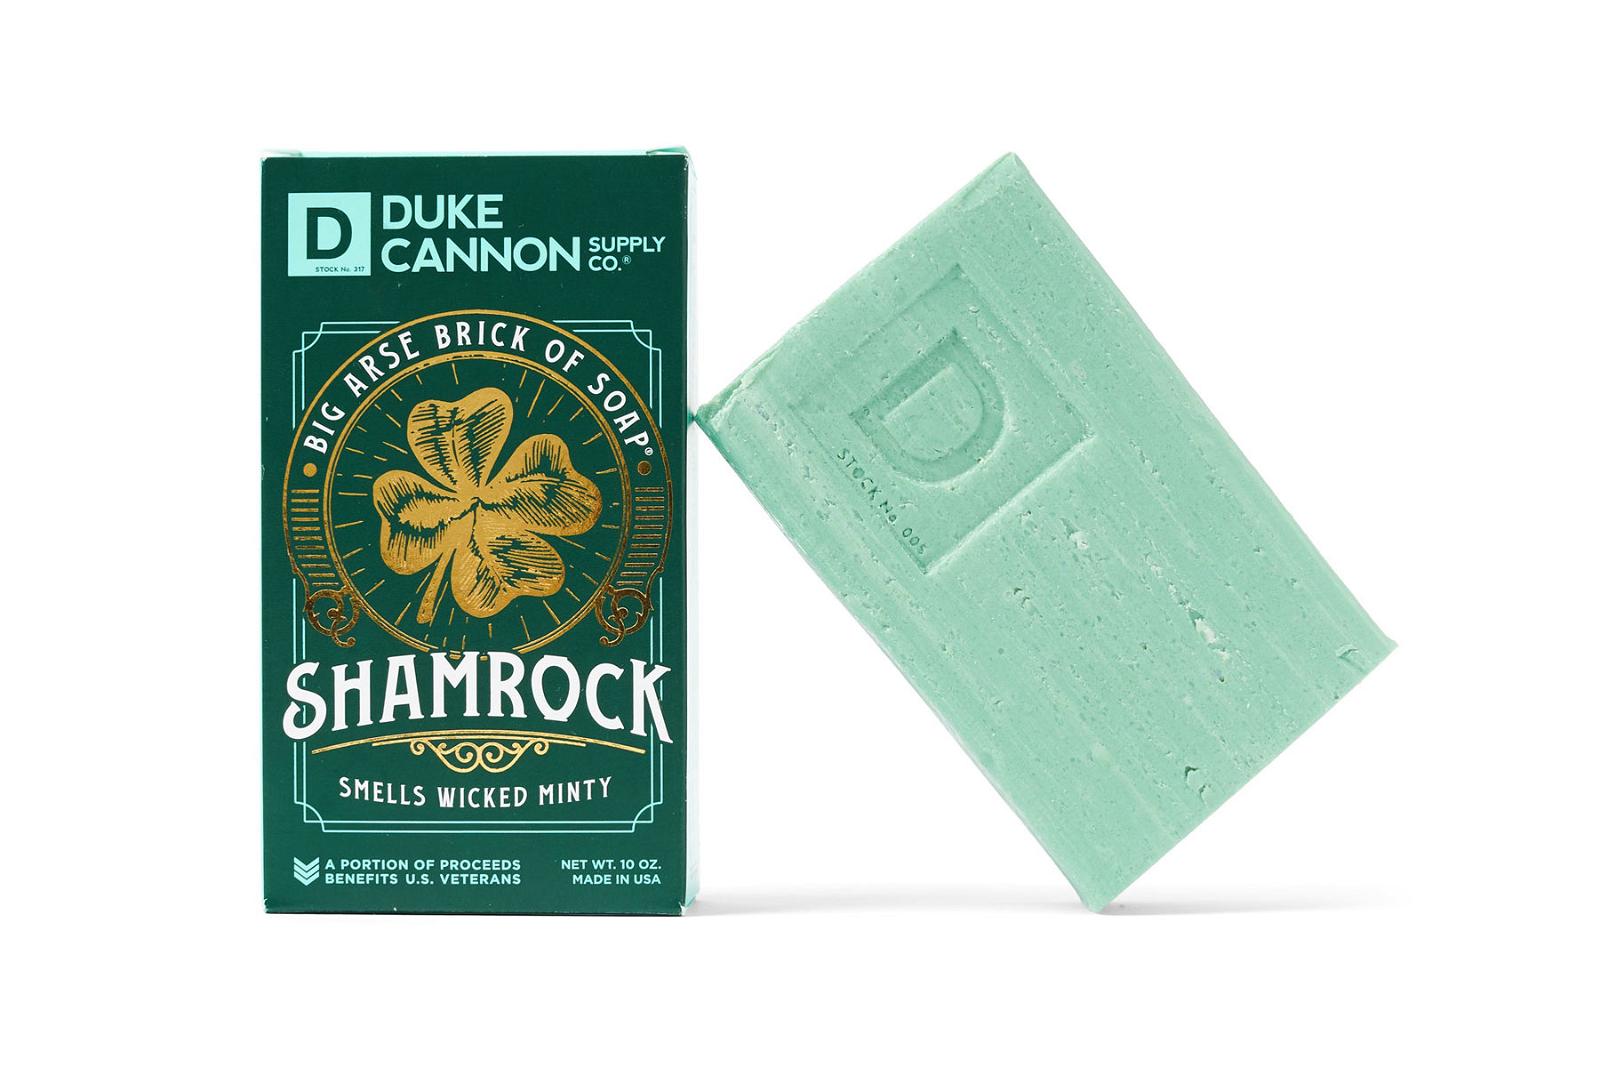 Duke Cannon SHAMROCK BIG ARSE BRICK OF SOAP